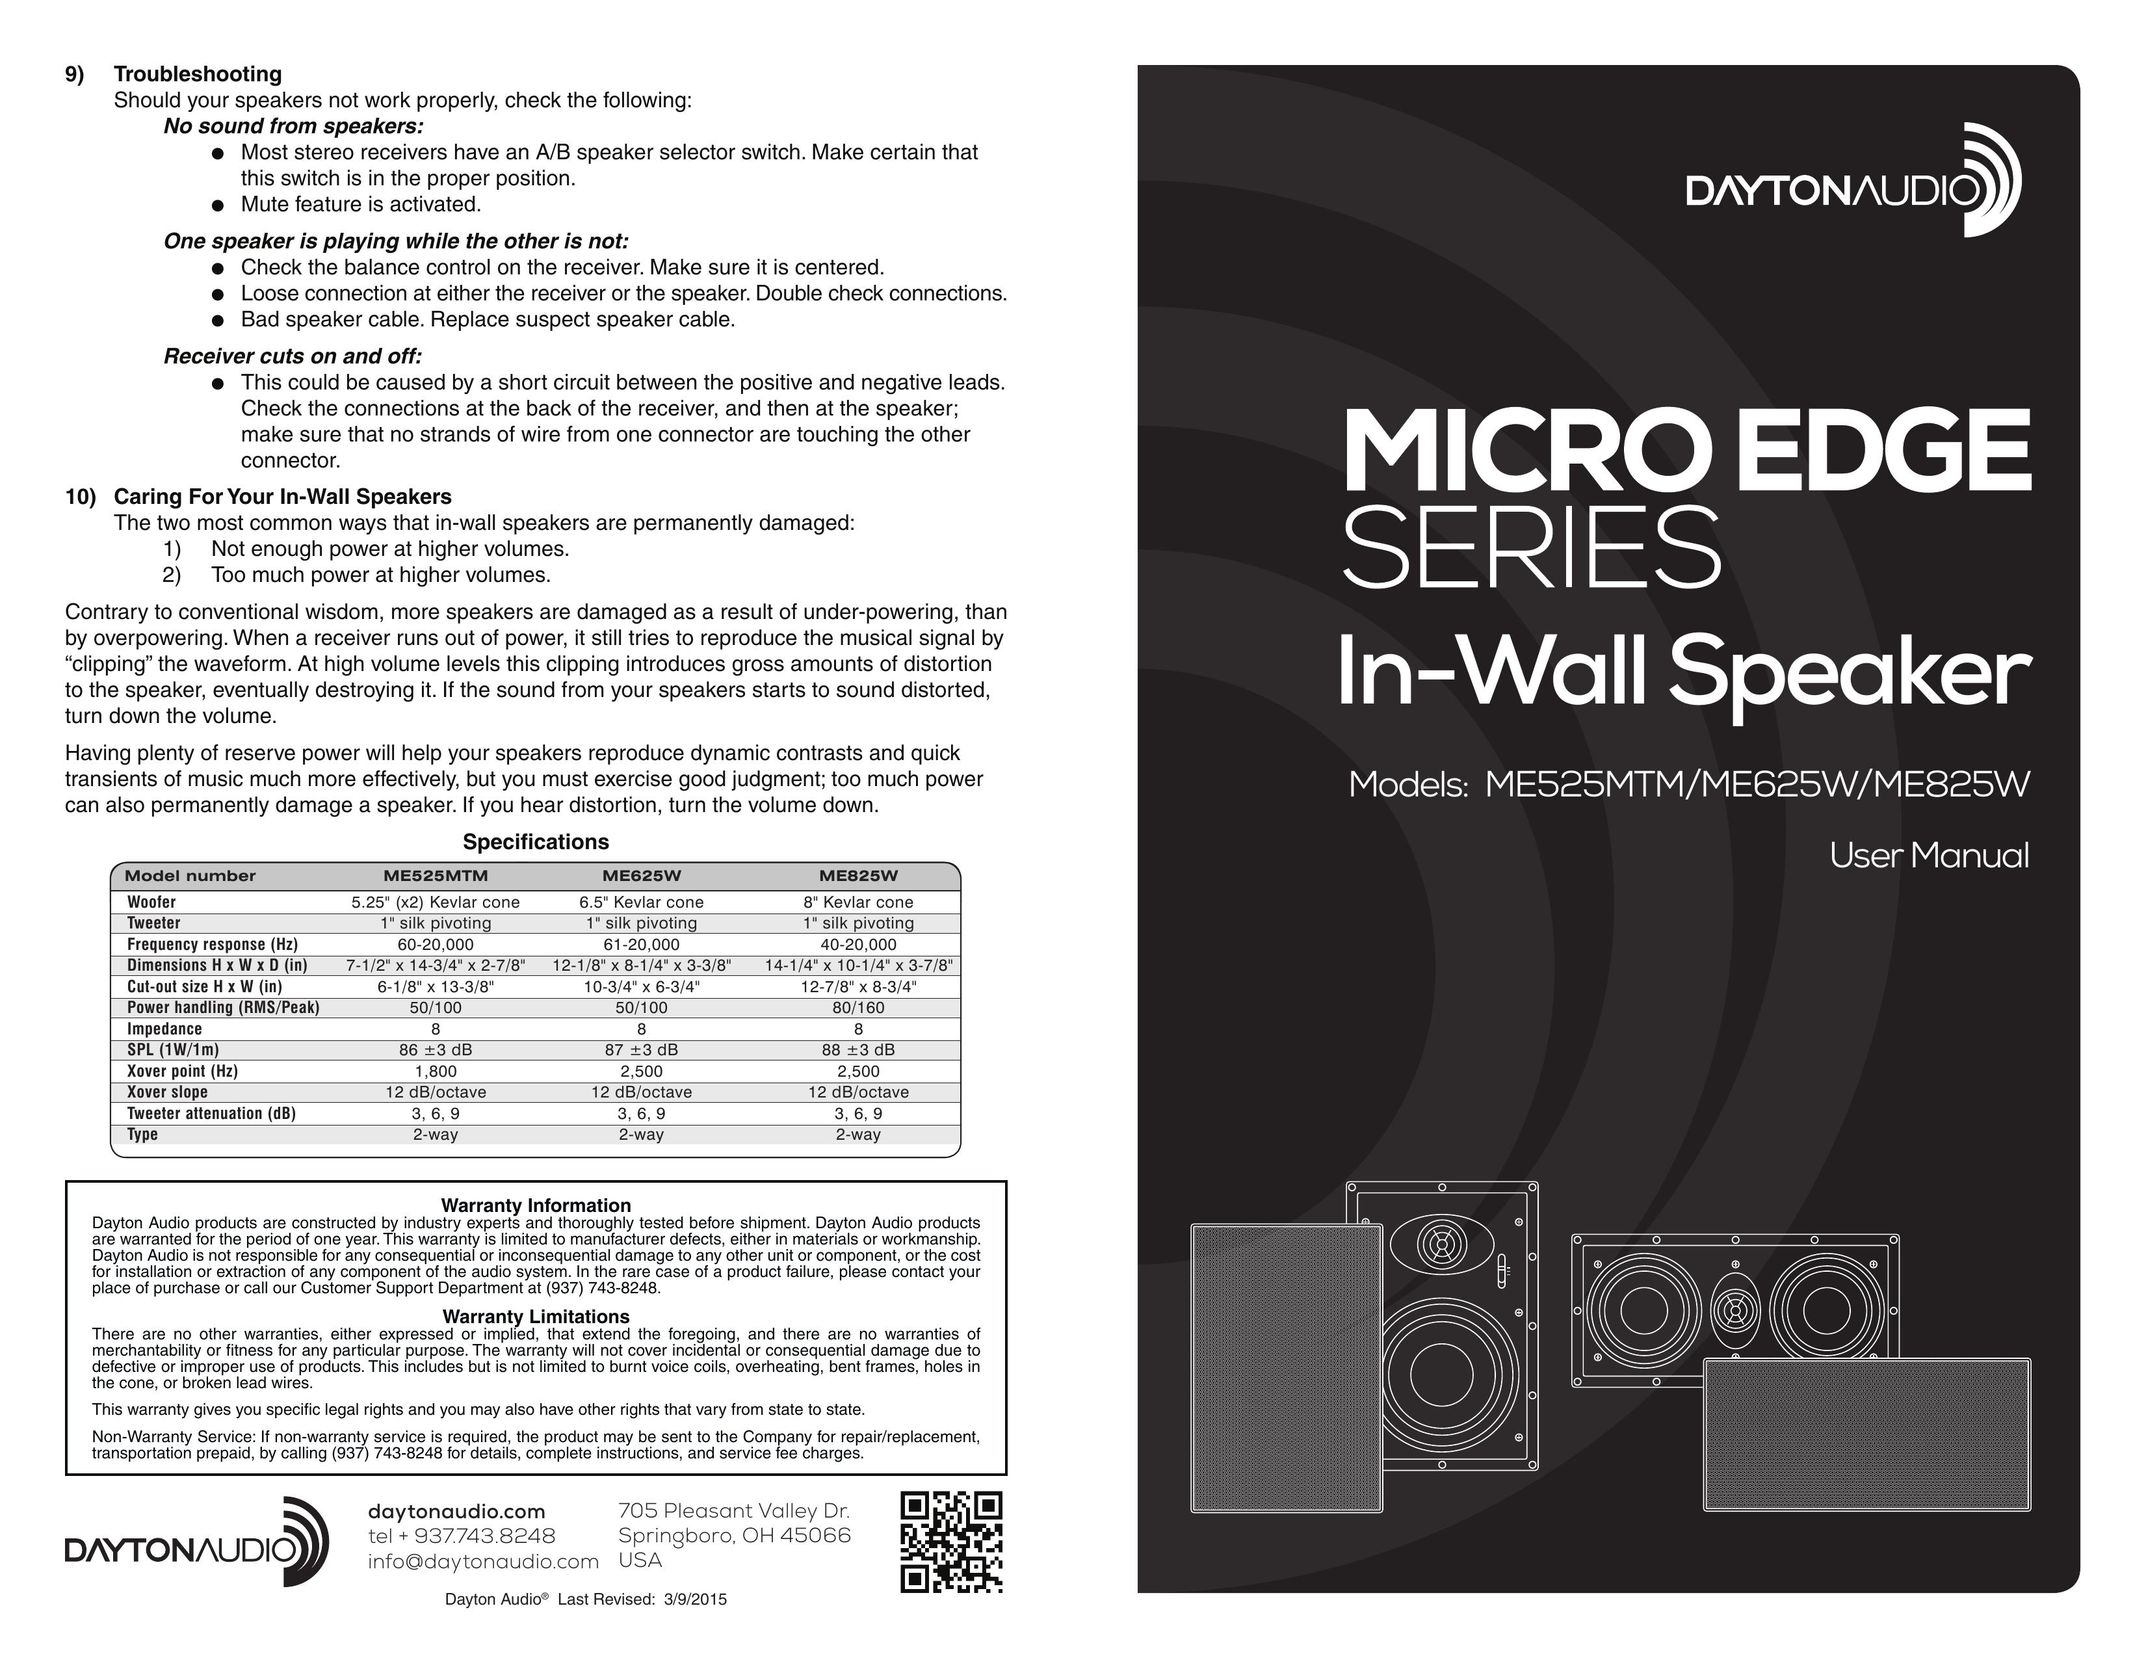 Dayton Audio me625w Speaker User Manual